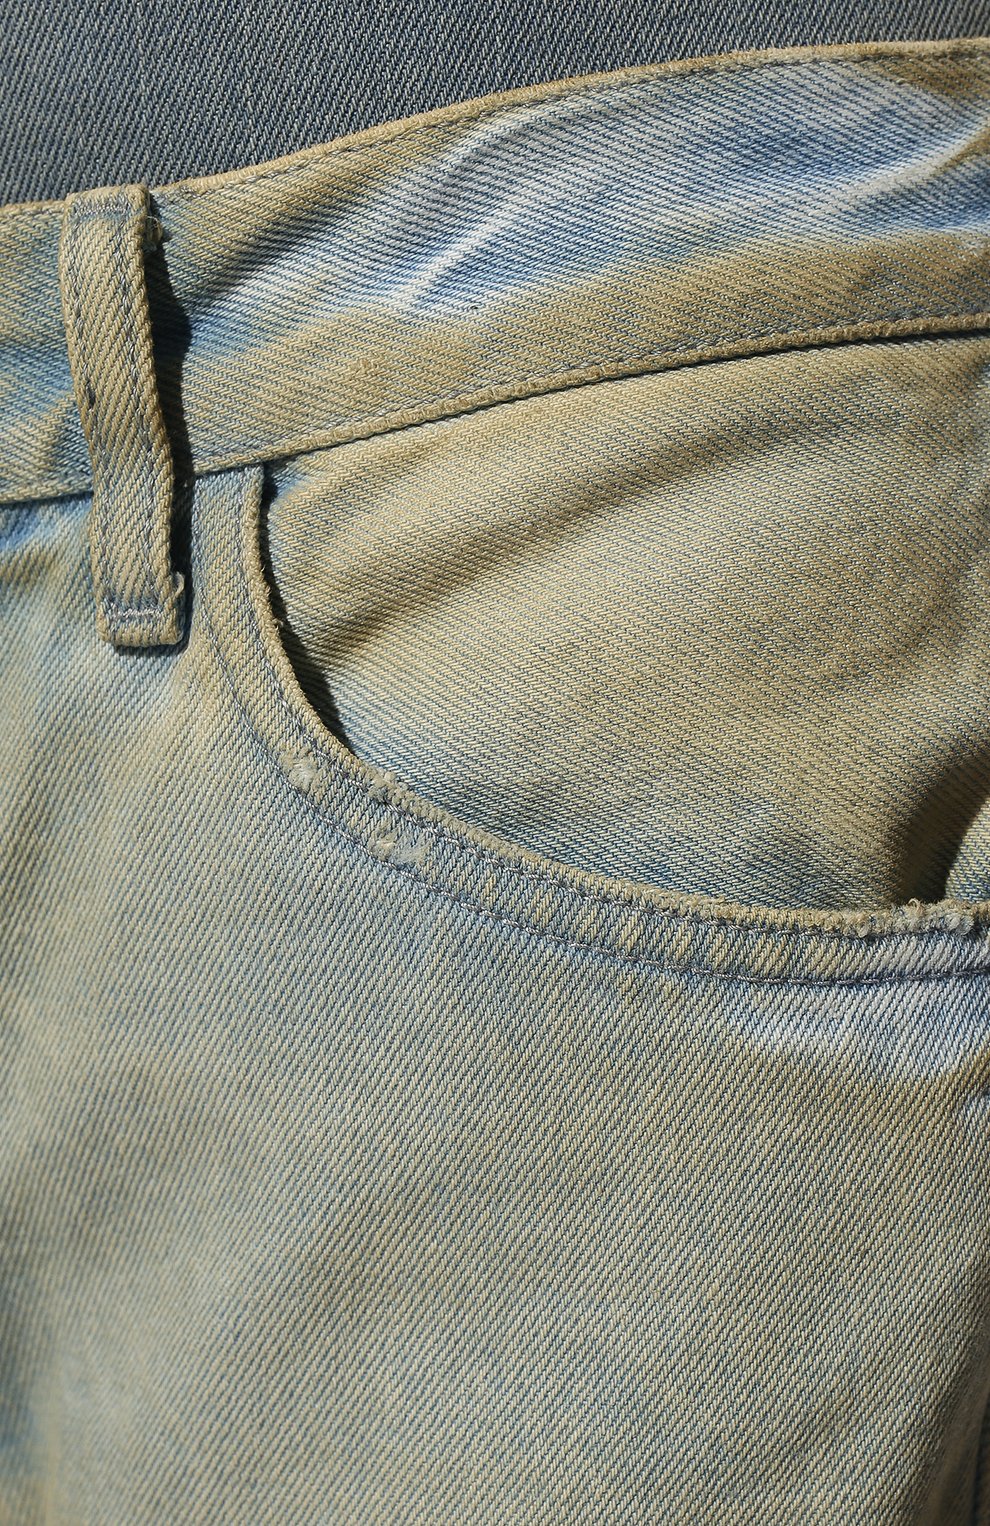 Женские джинсы THE ATTICO голубого цвета, арт. 222WCP70/D030 | Фото 5 (Длина (брюки, джинсы): Удлиненные; Кросс-КТ: Деним; Стили: Гранж; Силуэт Ж (брюки и джинсы): Расклешенные; Материал внешний: Хлопок, Деним; Детали: Потертости)